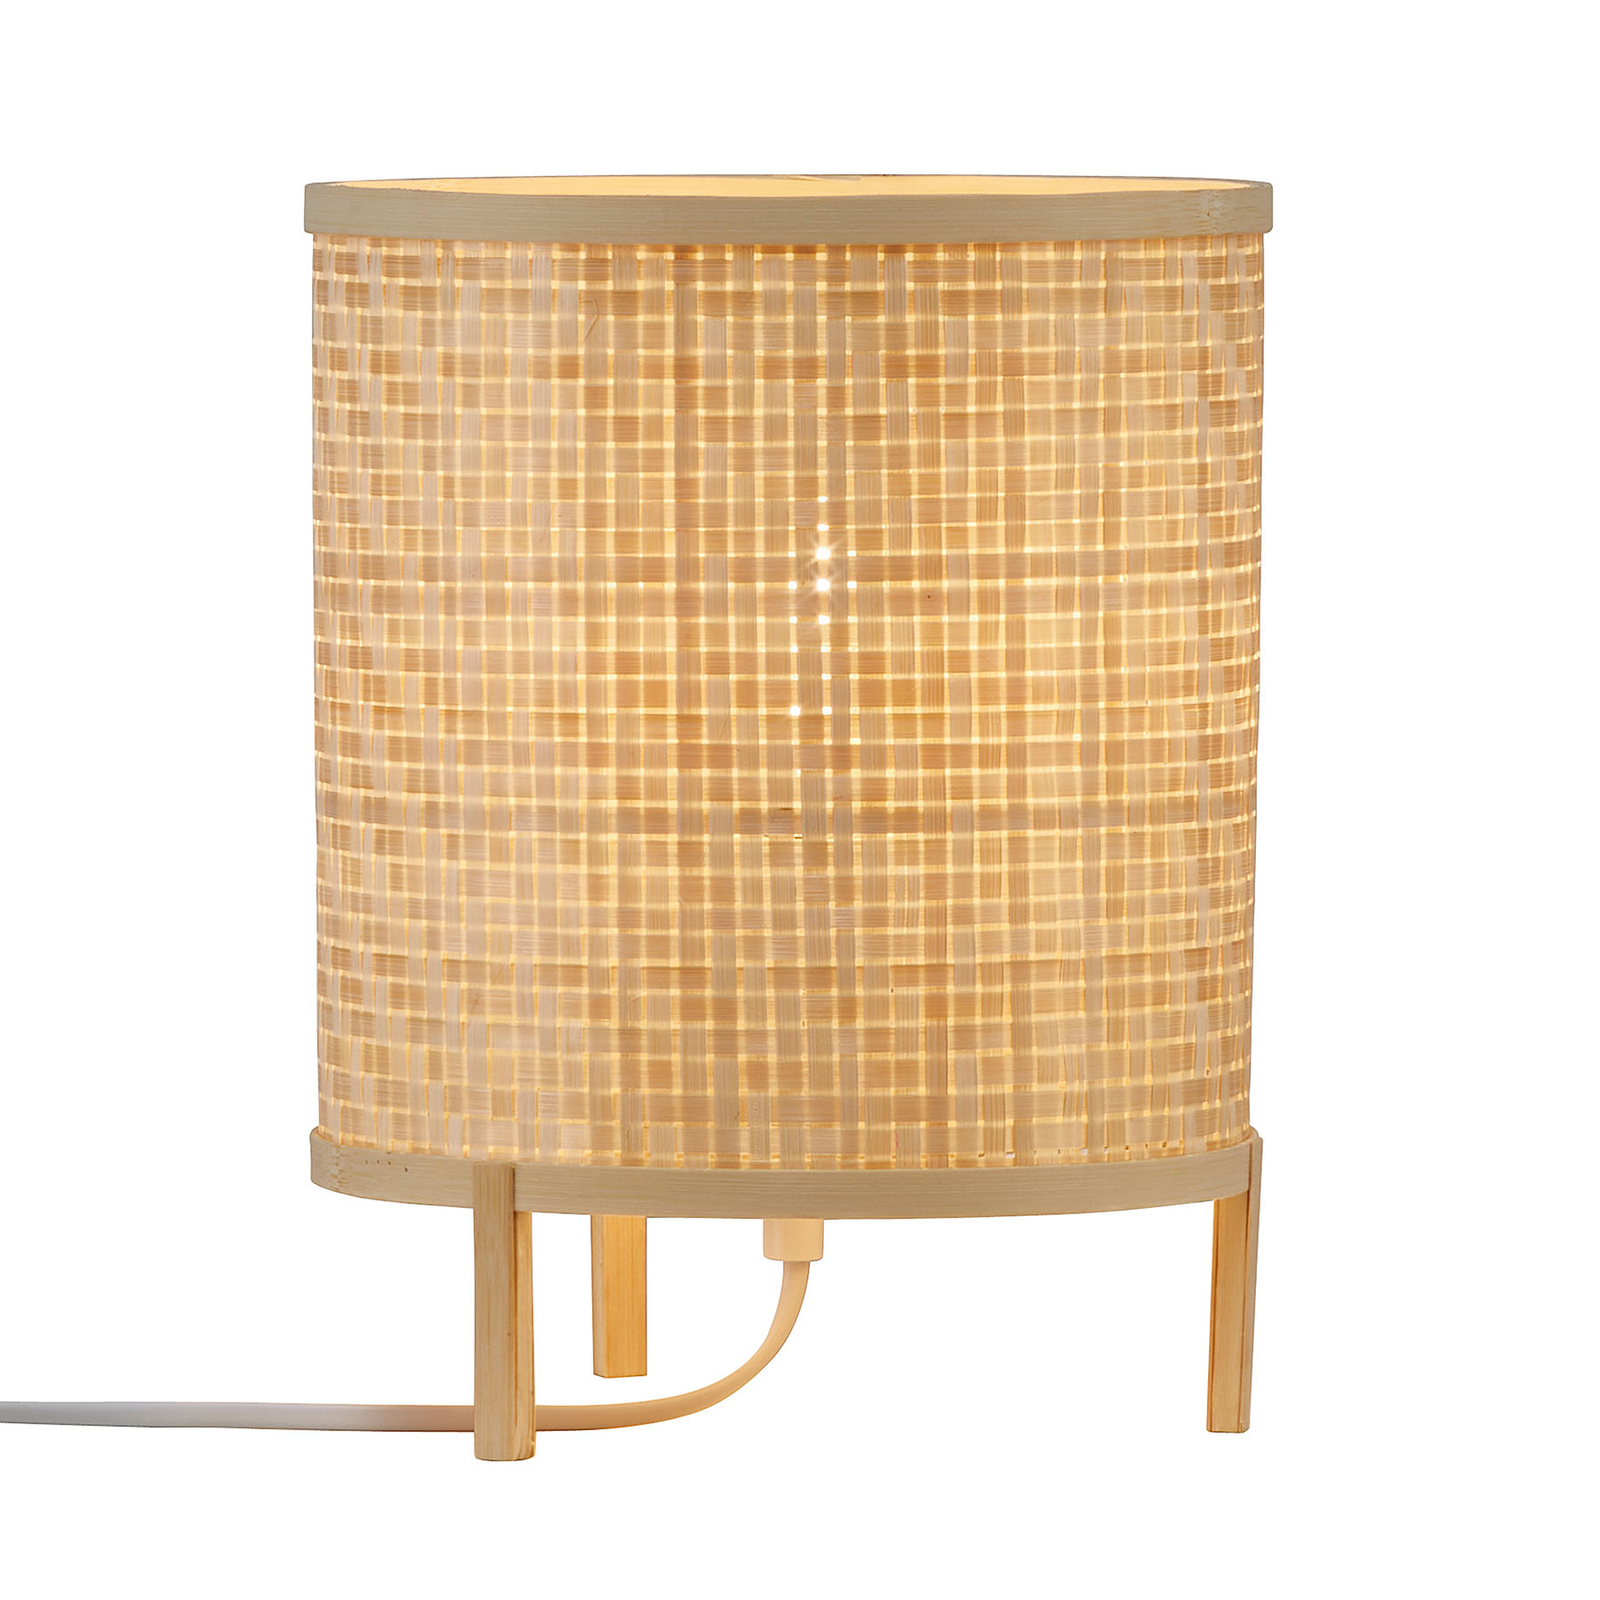 Trinidad table lamp made of natural bamboo